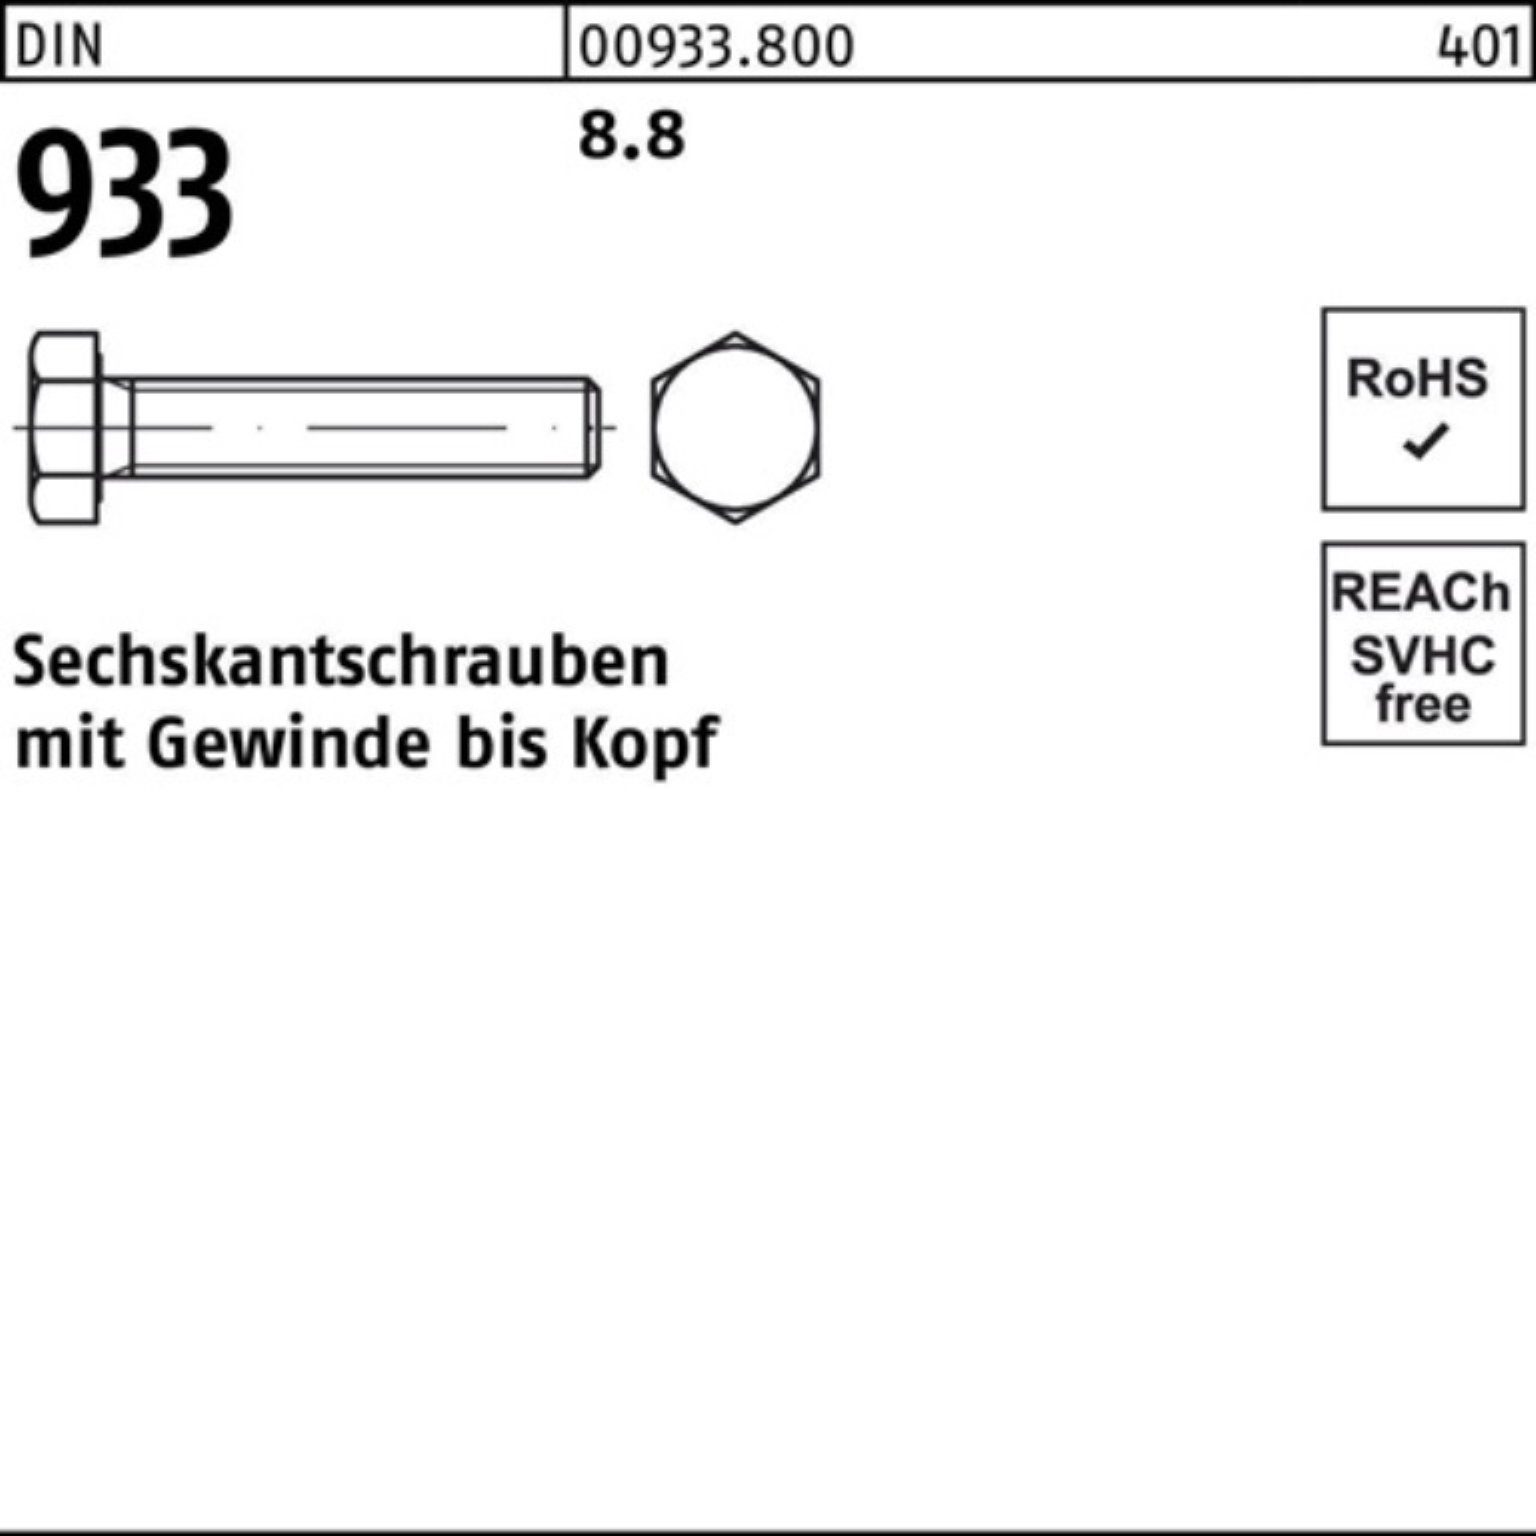 Sechskantschraube 933 M12x 25 DIN 100er Sechskantschraube DIN Stück 8.8 VG 240 Reyher Pack 933